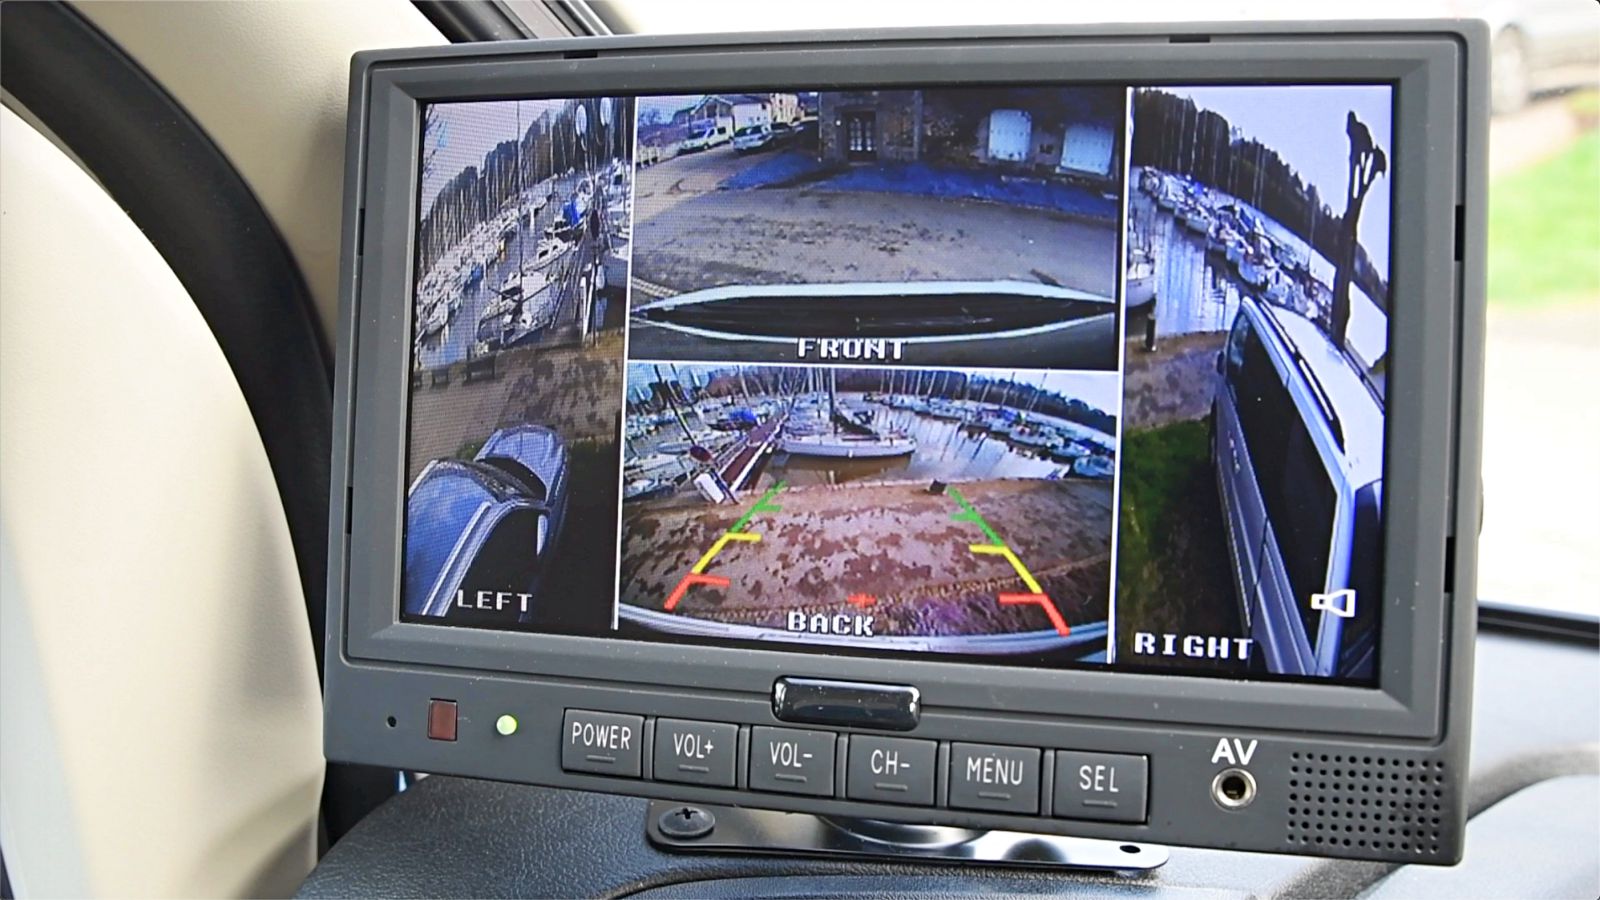 Se garer en sécurité grâce aux caméras 360 degrés - Guide Auto